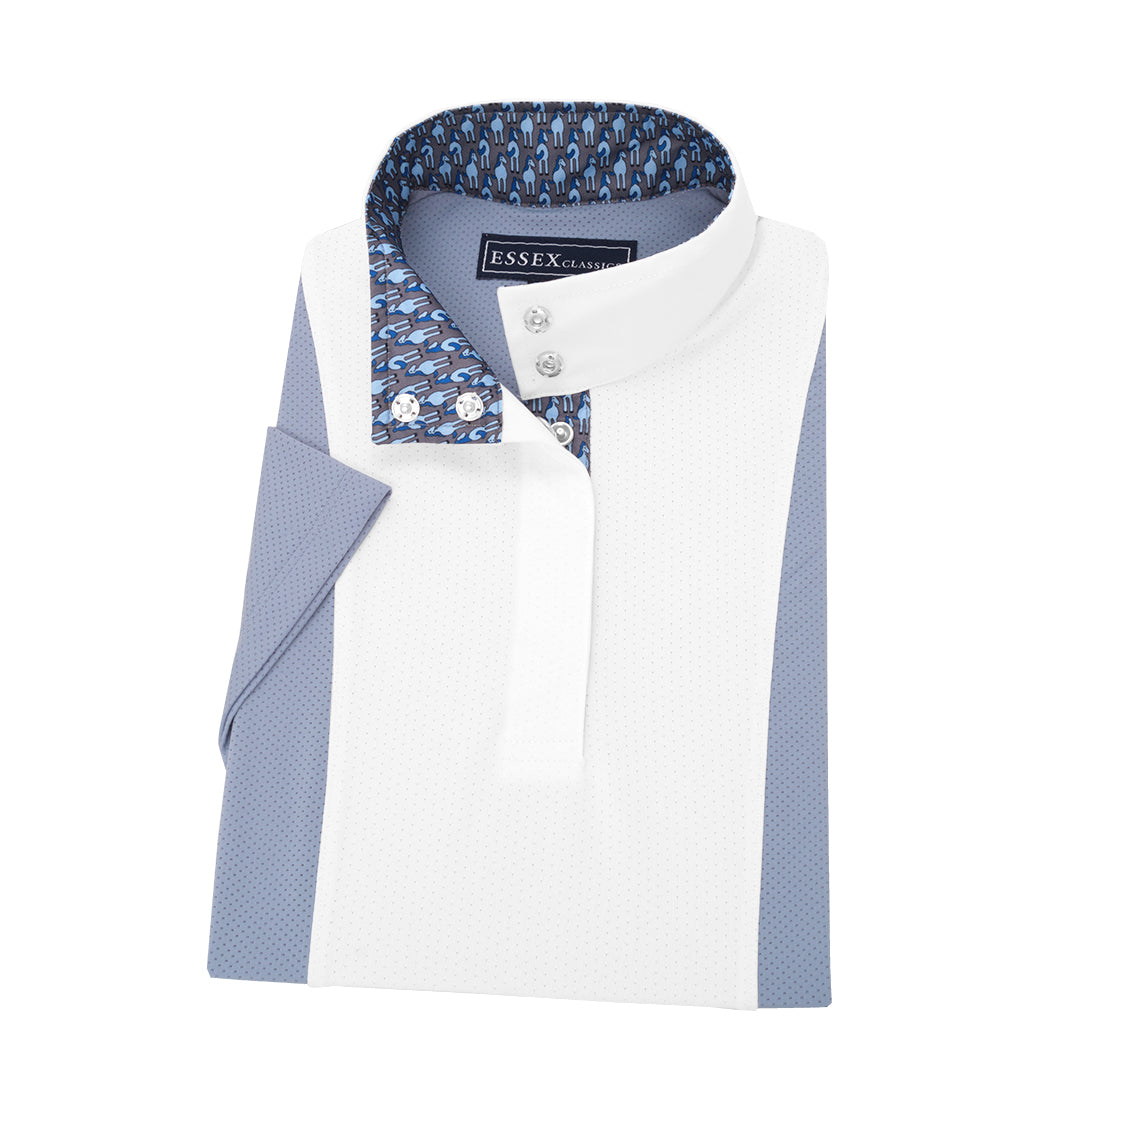 Essex Classics Luna Colorblock Short Sleeve Shirt